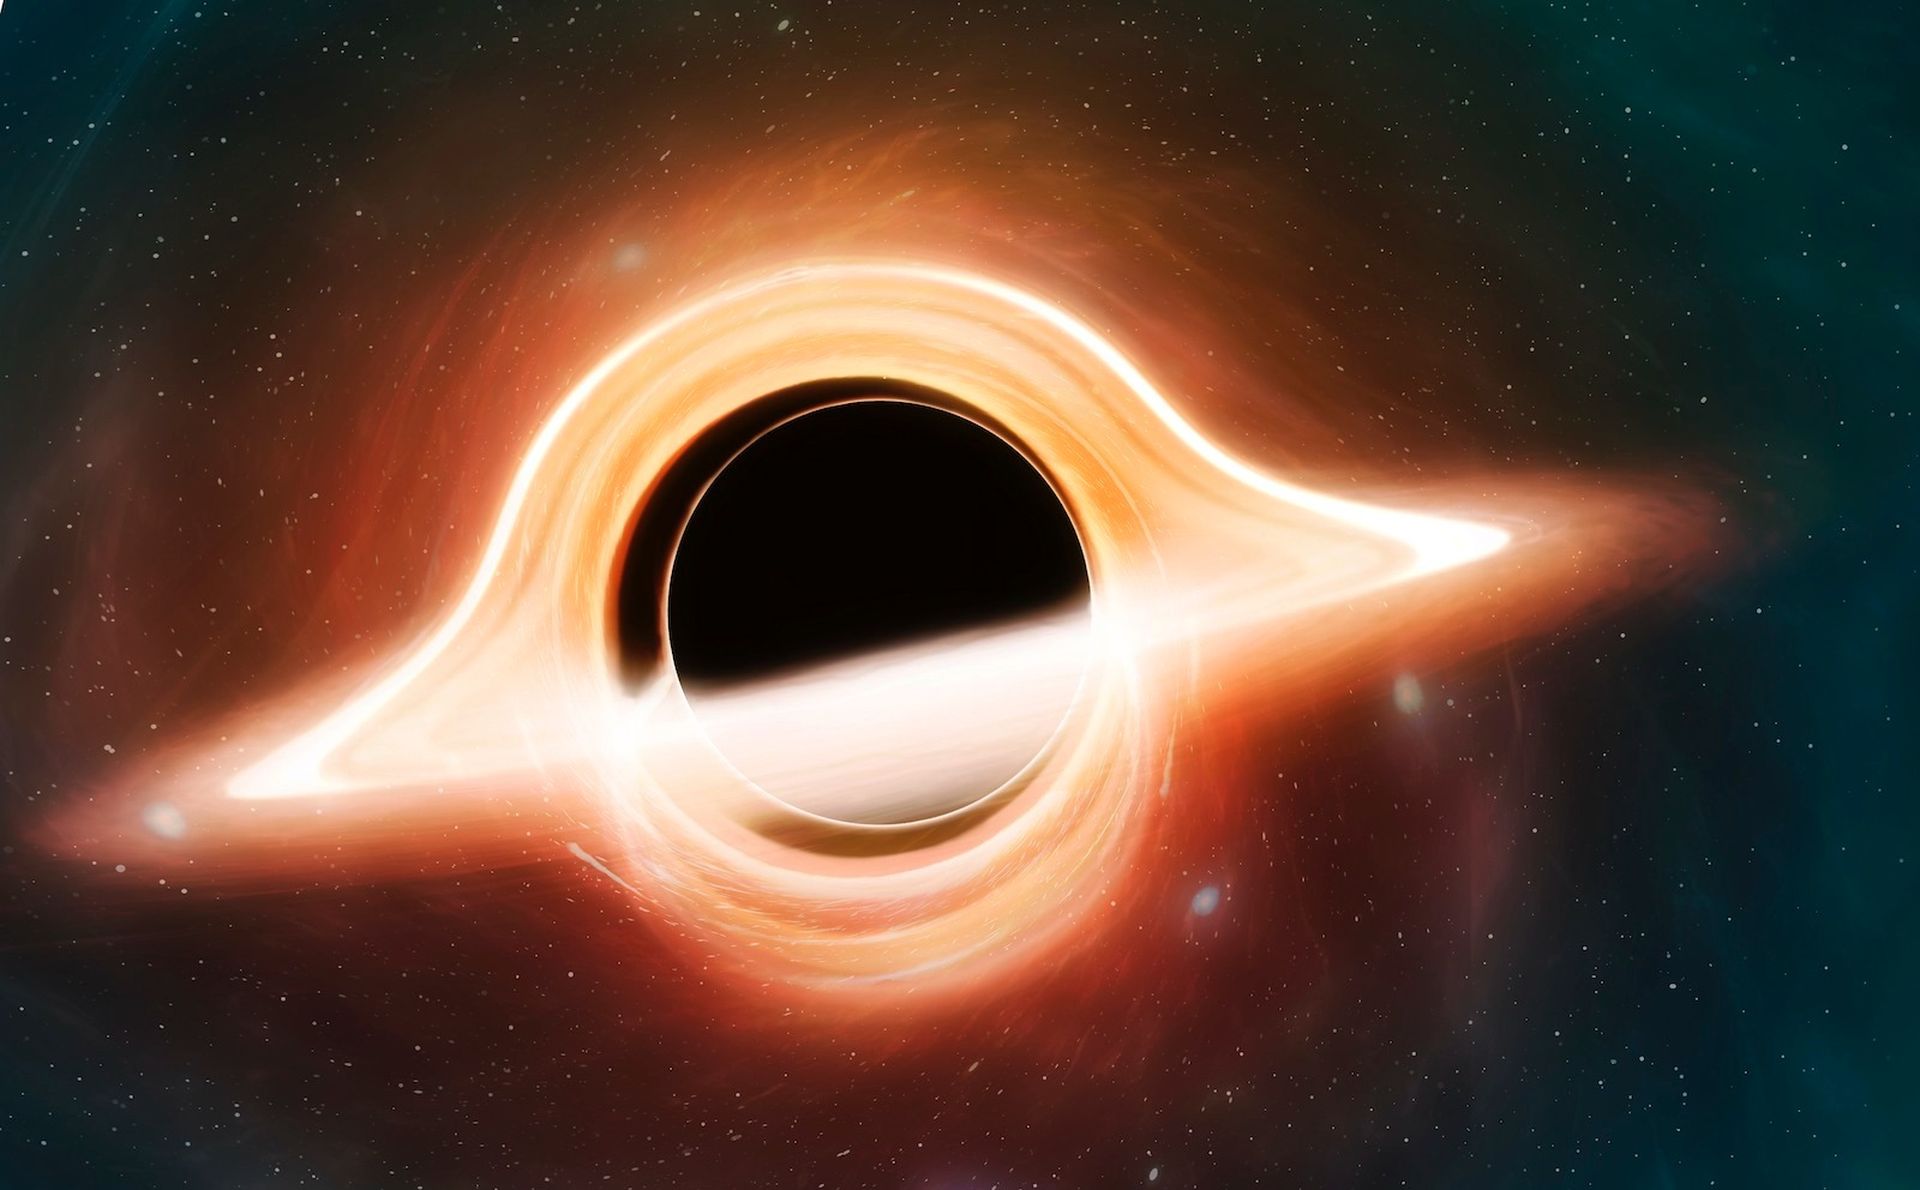 科学者たちは、私たちの天の川銀河の中心にある超大質量ブラックホールであるサギタリウスA*をなんとか想像することができました。 それは驚異的なブラックホールであり、私たちの太陽の400万倍の質量です。